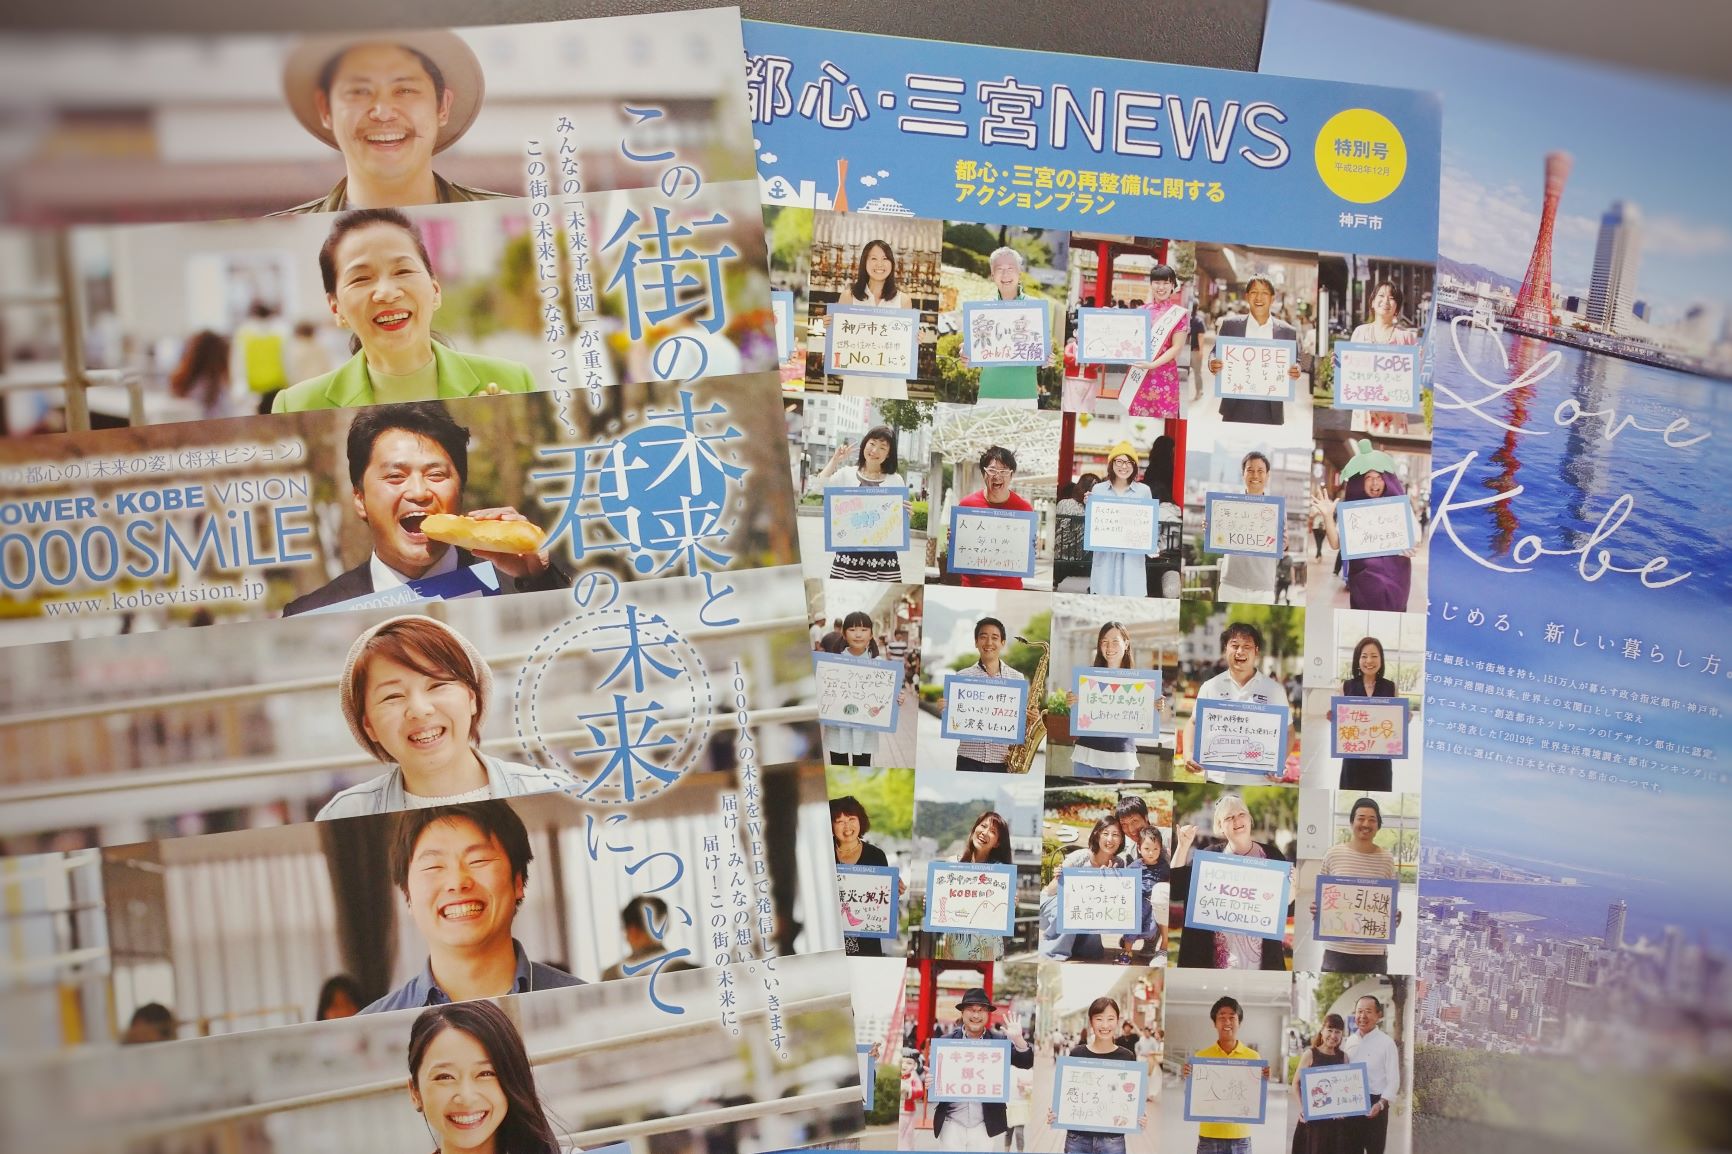 神戸で暮らす人たち（1000SMiLEプロジェクトより） | 地域のトピックス